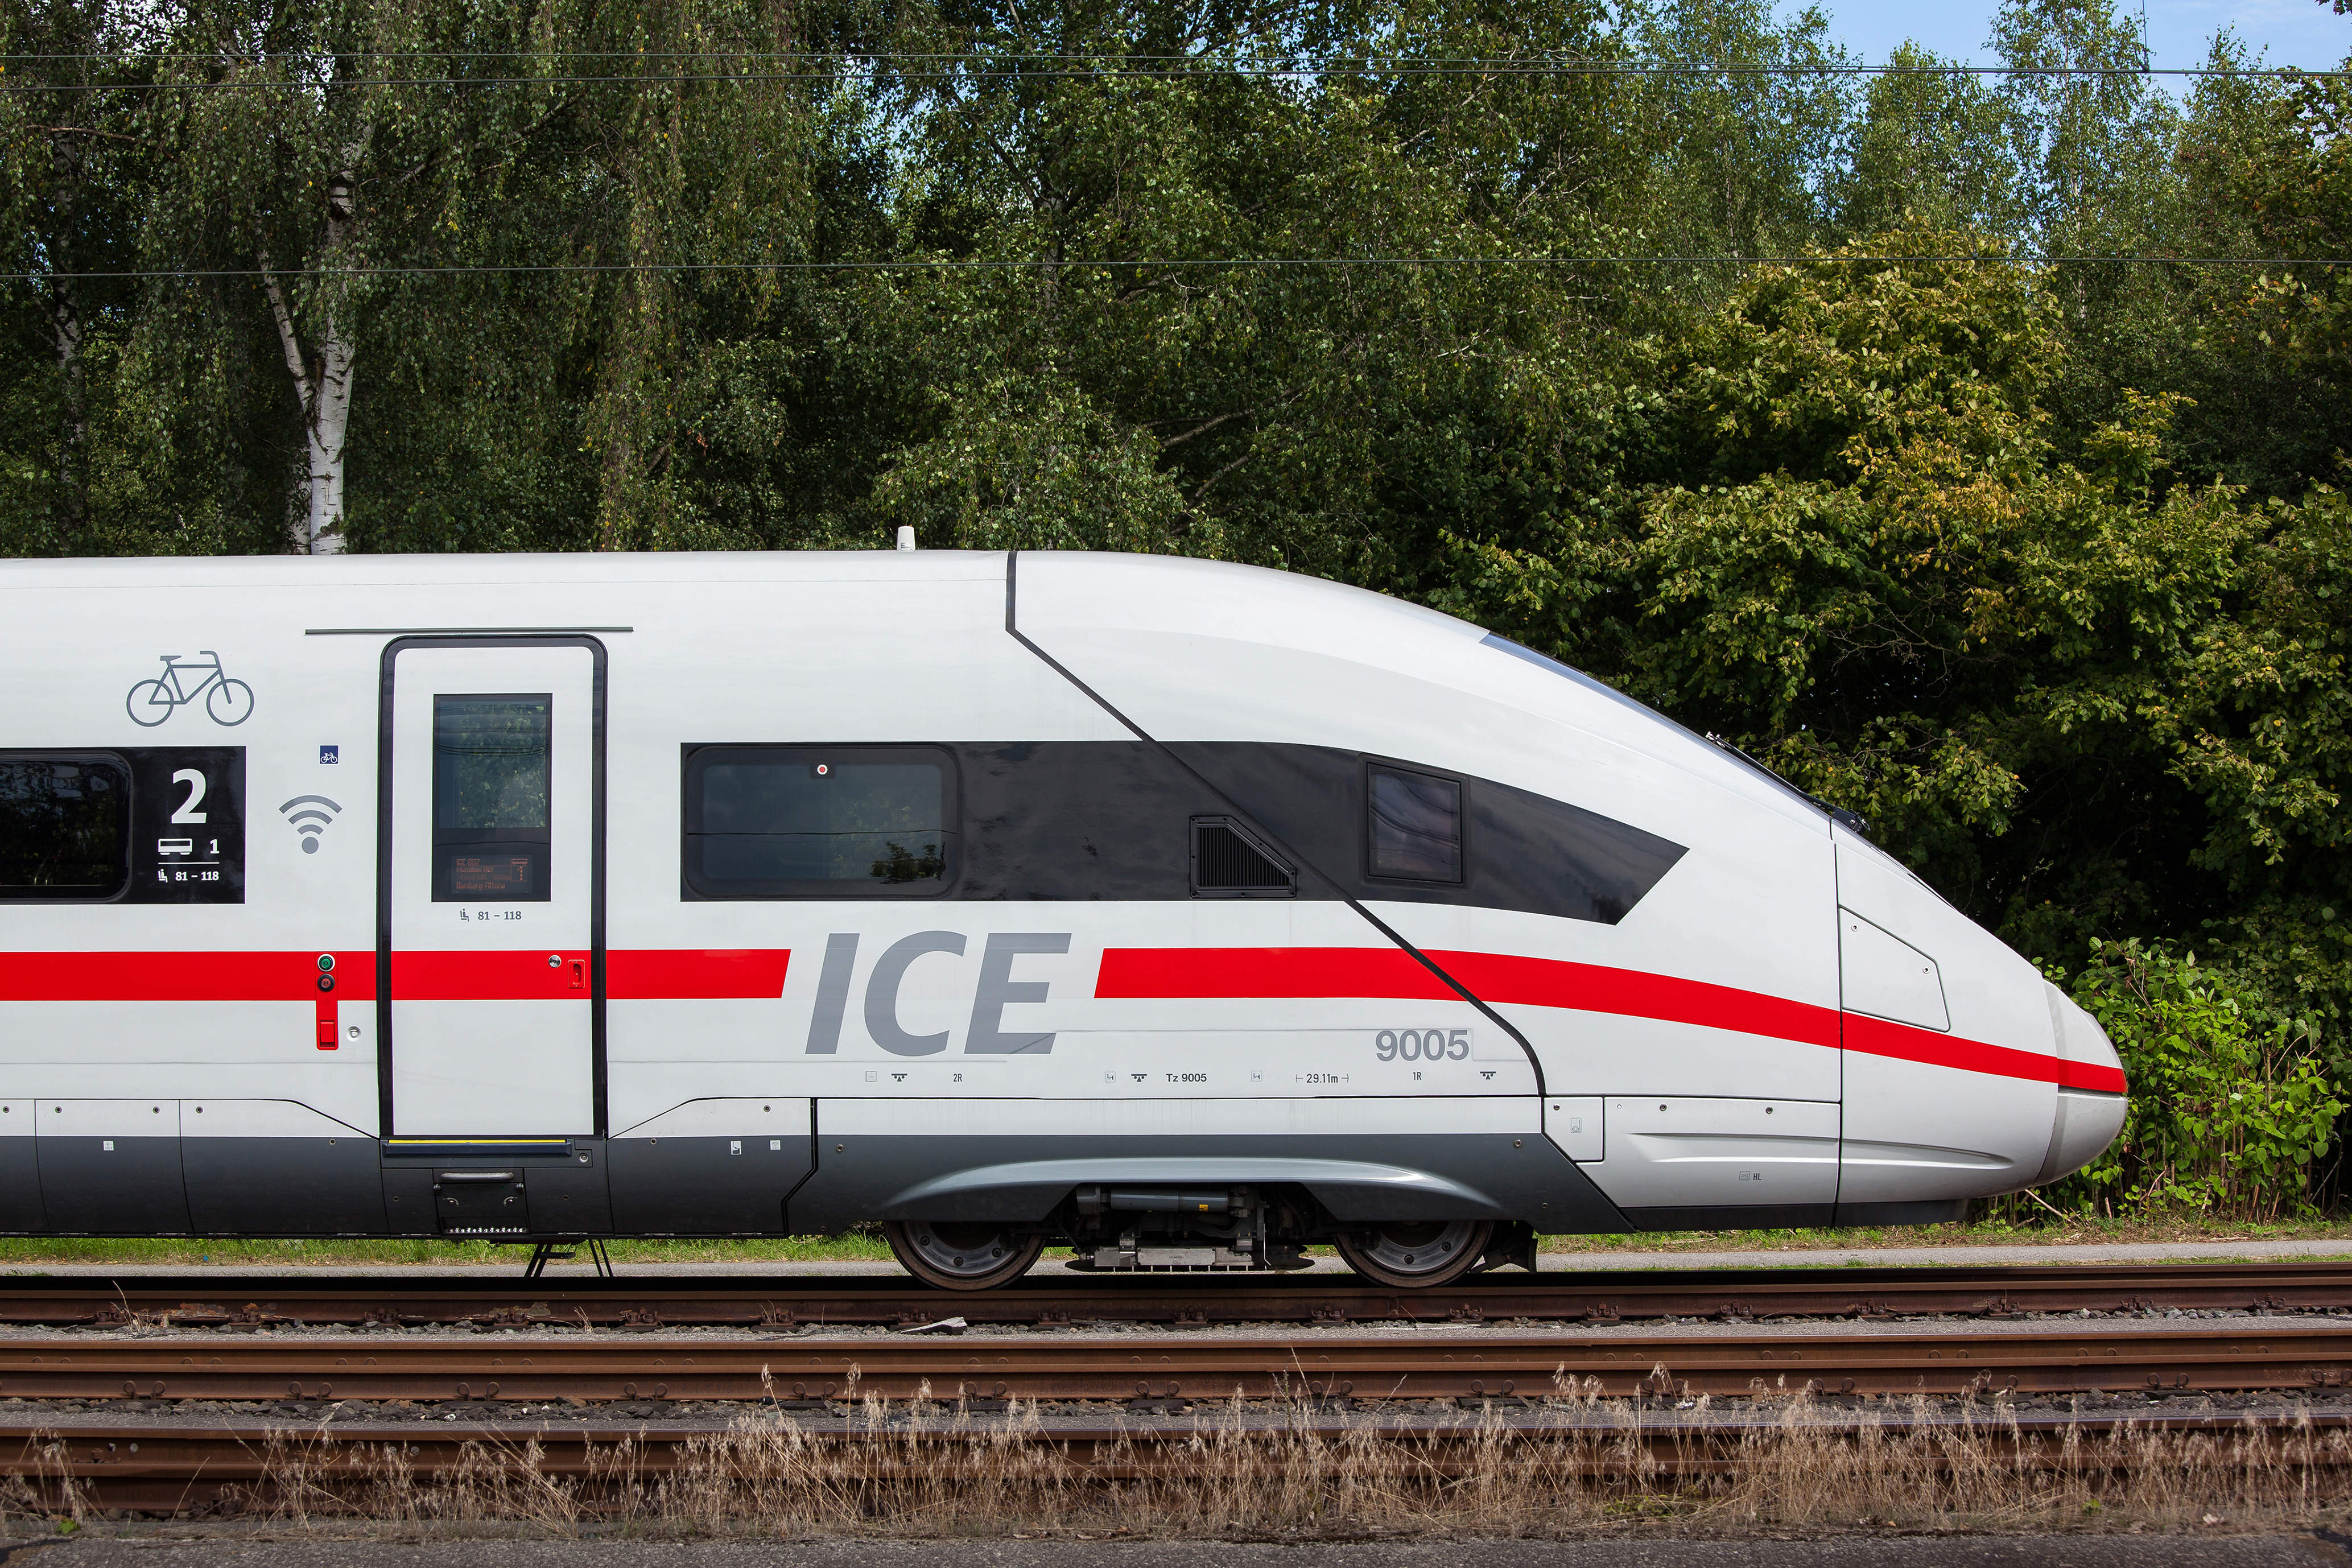 Br 4.24. Siemens Ice 3. Siemens Ice 1. Ice 4 Siemens. Скоростной поезд в Германии Ice 4.